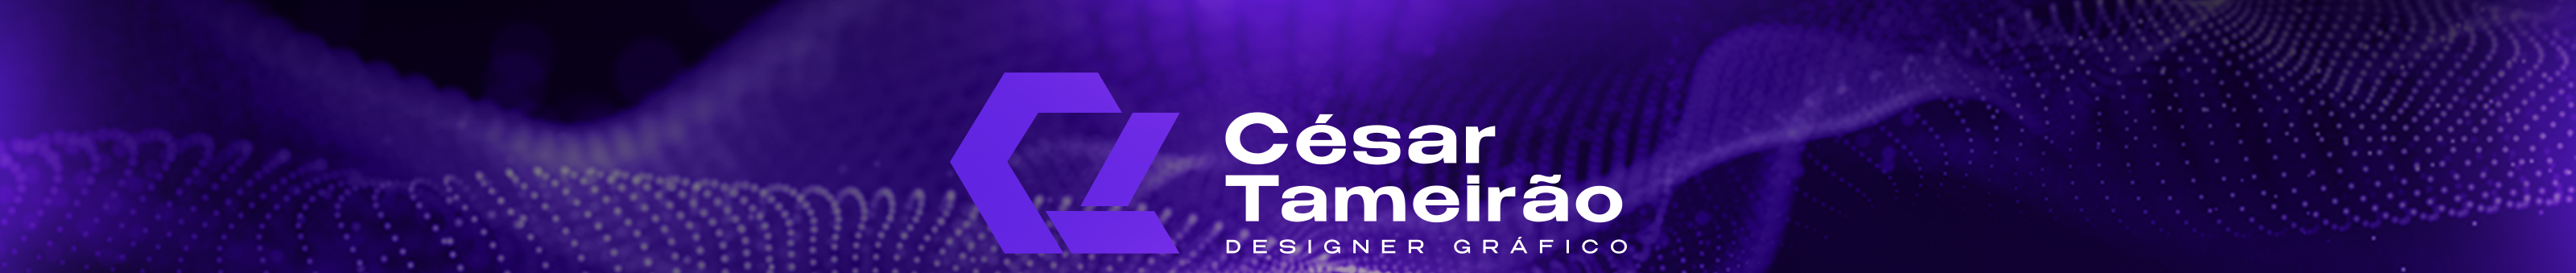 Cesar Tameirao's profile banner